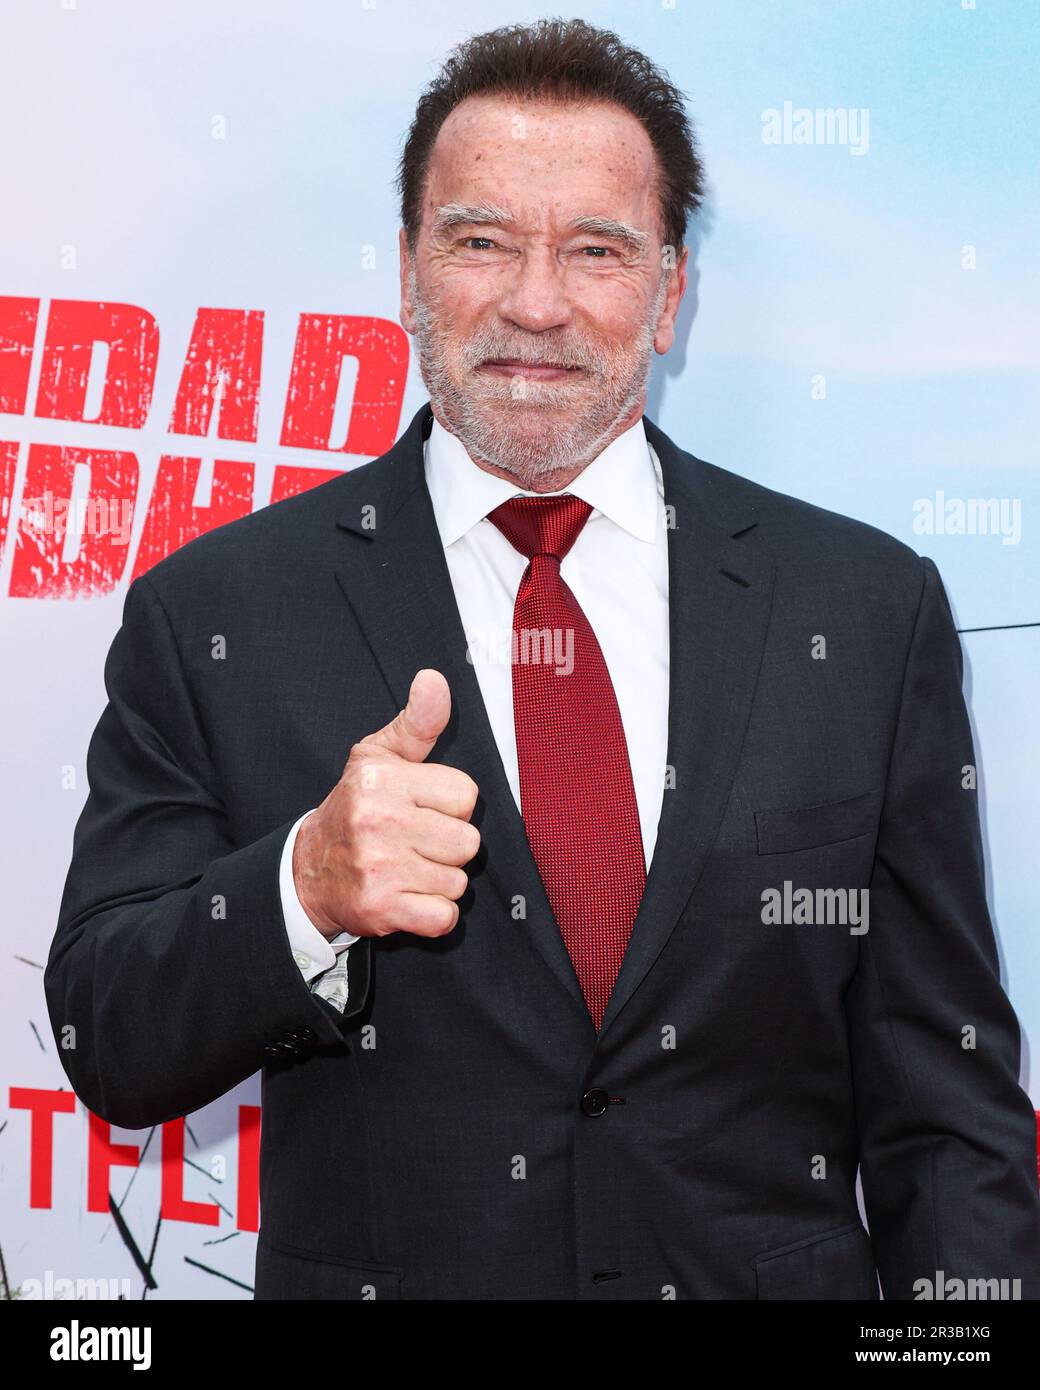 Repaso a la carrera de Arnold Schwarzenegger, el actor y político